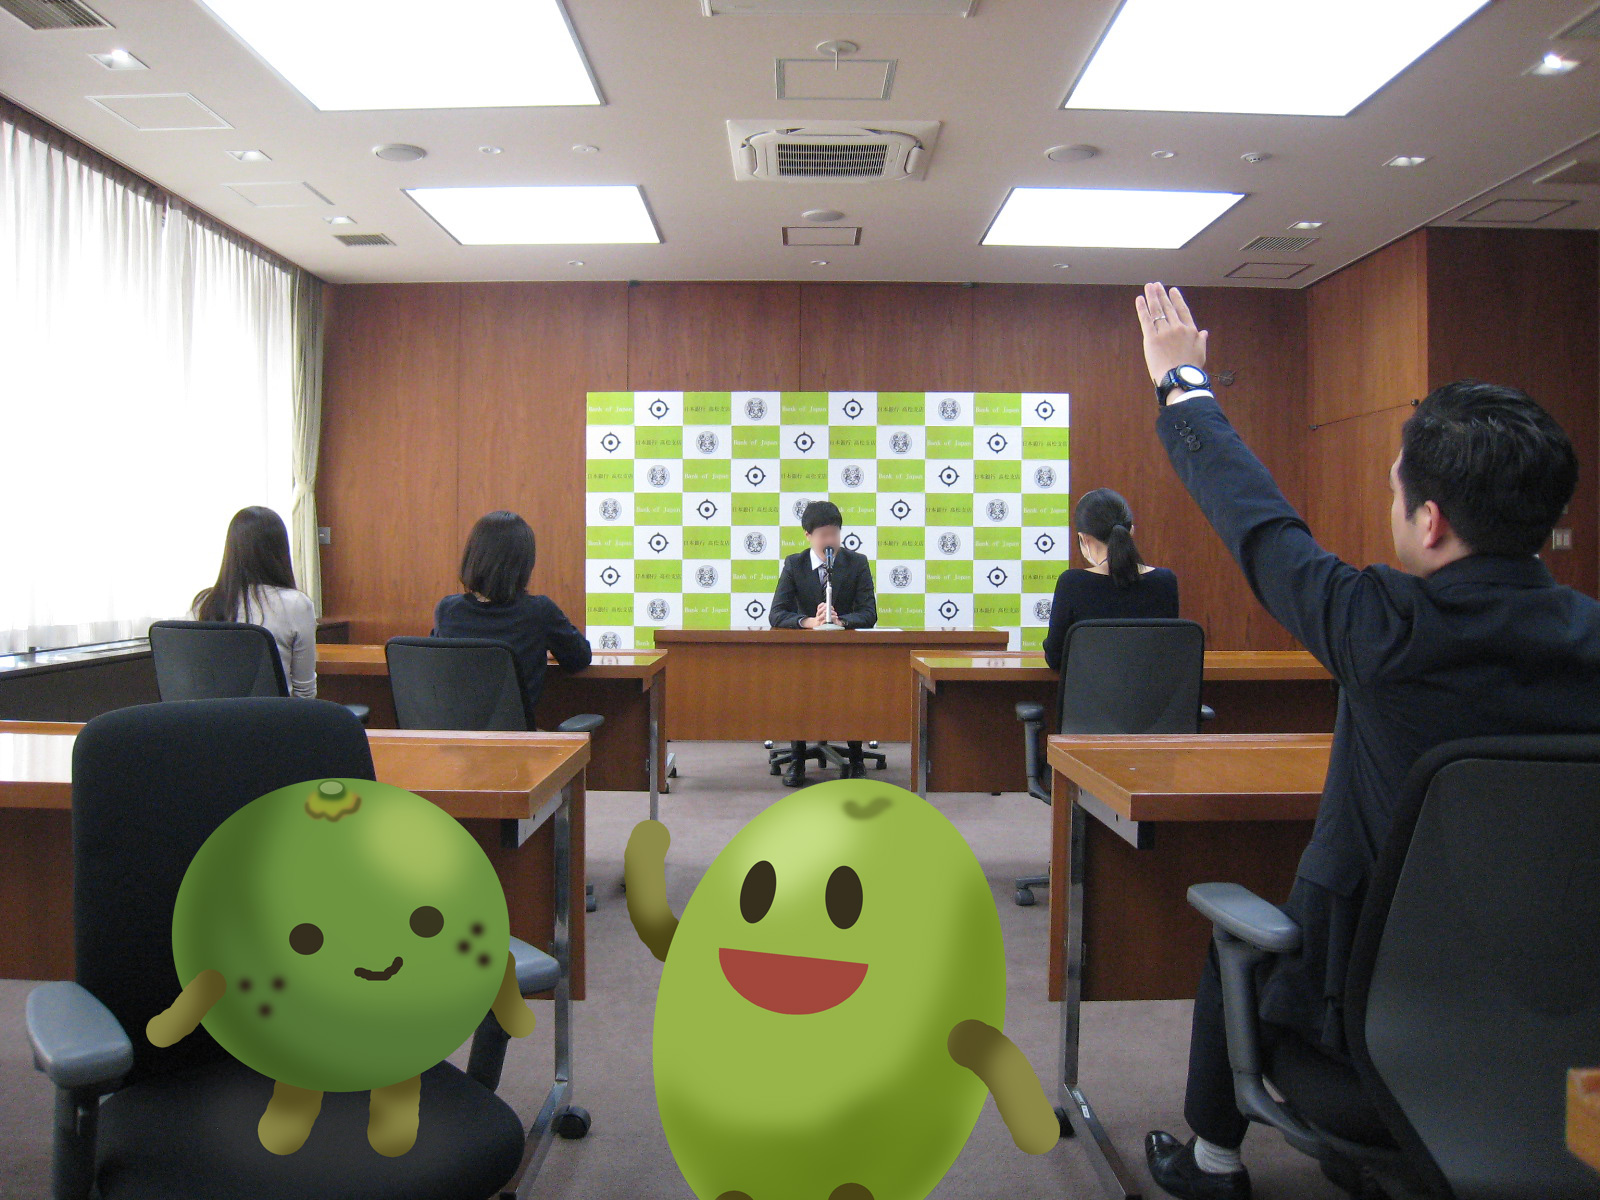 日銀高松支店の会議室で、記者会見を行っている風景を撮影。奥側に会見を実施する職員が着席。手前側には、記者が着席している。記者の１人が手を挙げて質問している